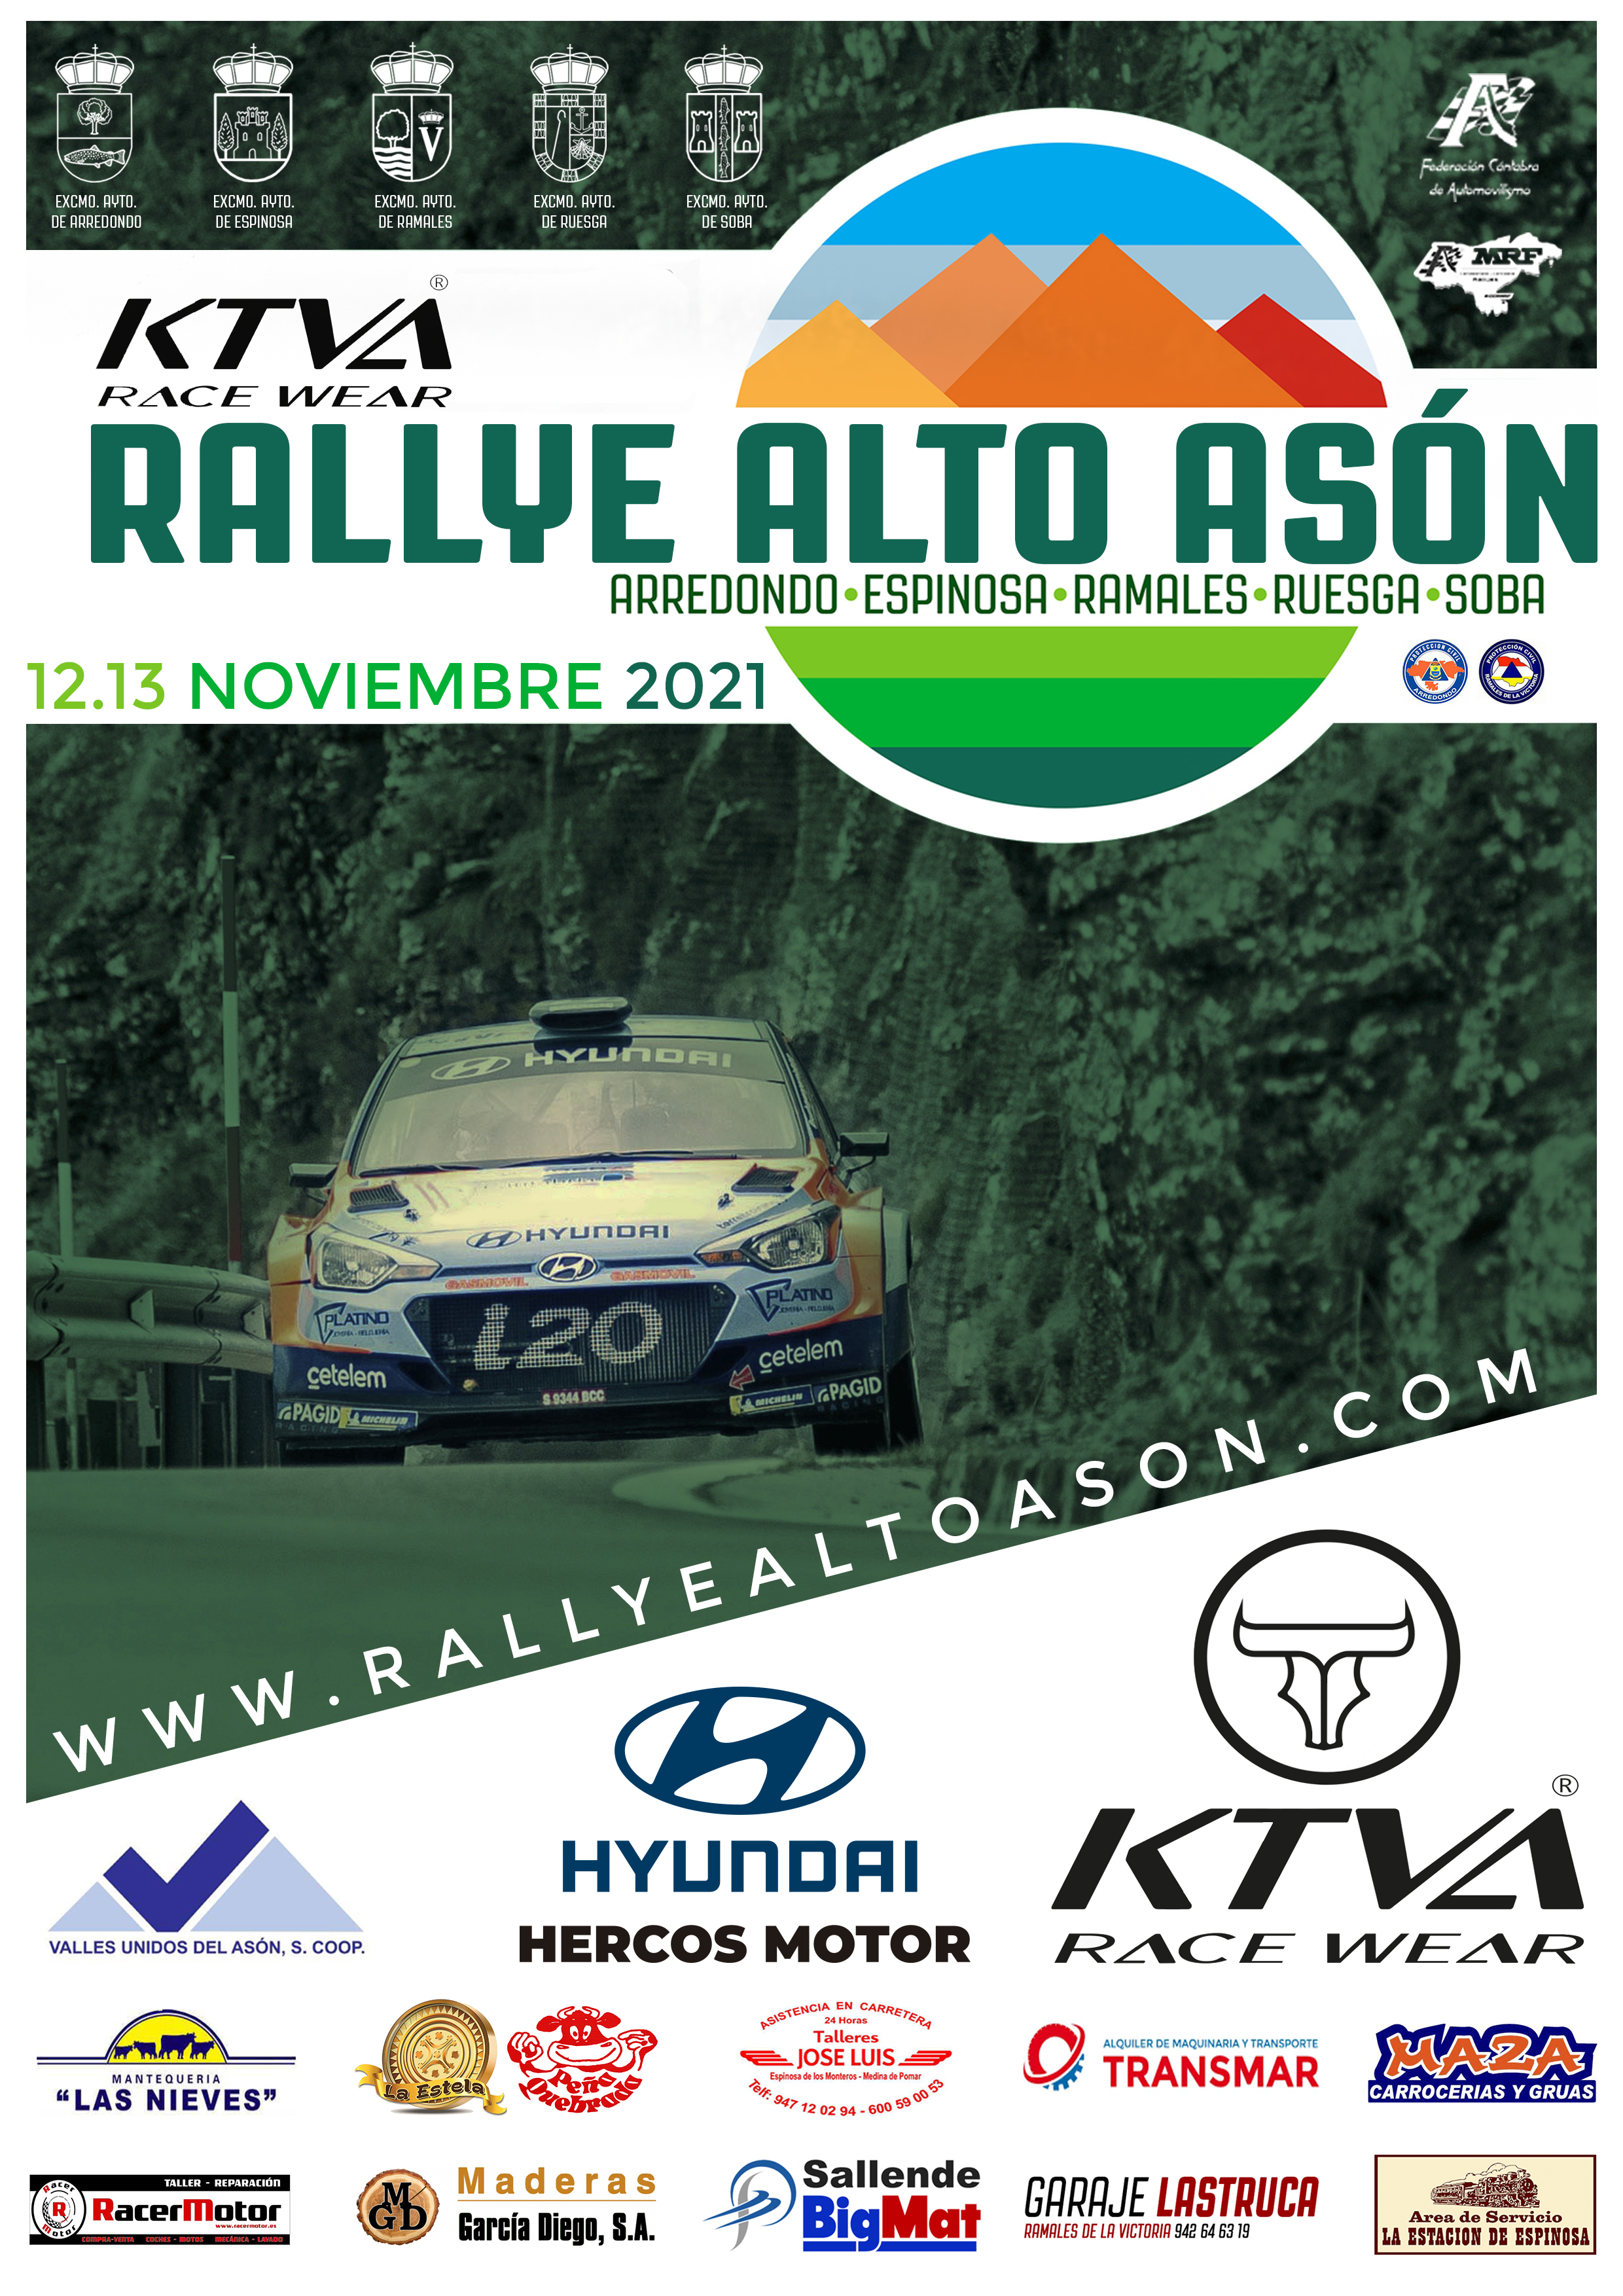 Rallye Alto Asón KTVA